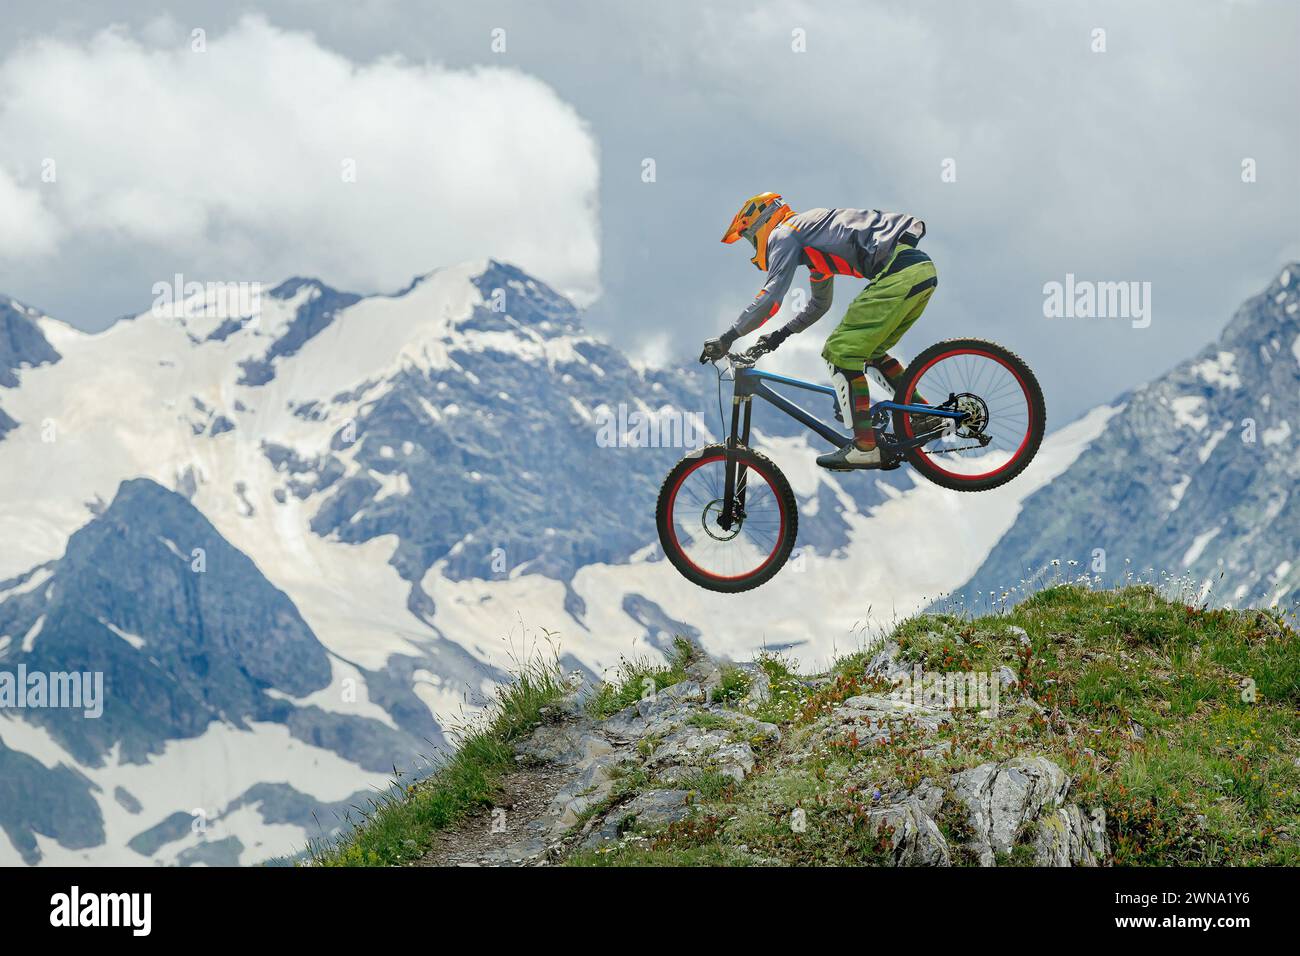 Il mountain bike sfida la gravità, sorvolando a mezz'aria sullo sfondo di cime innevate e vegetazione lussureggiante. Ideale per avventure, sport e natura Foto Stock